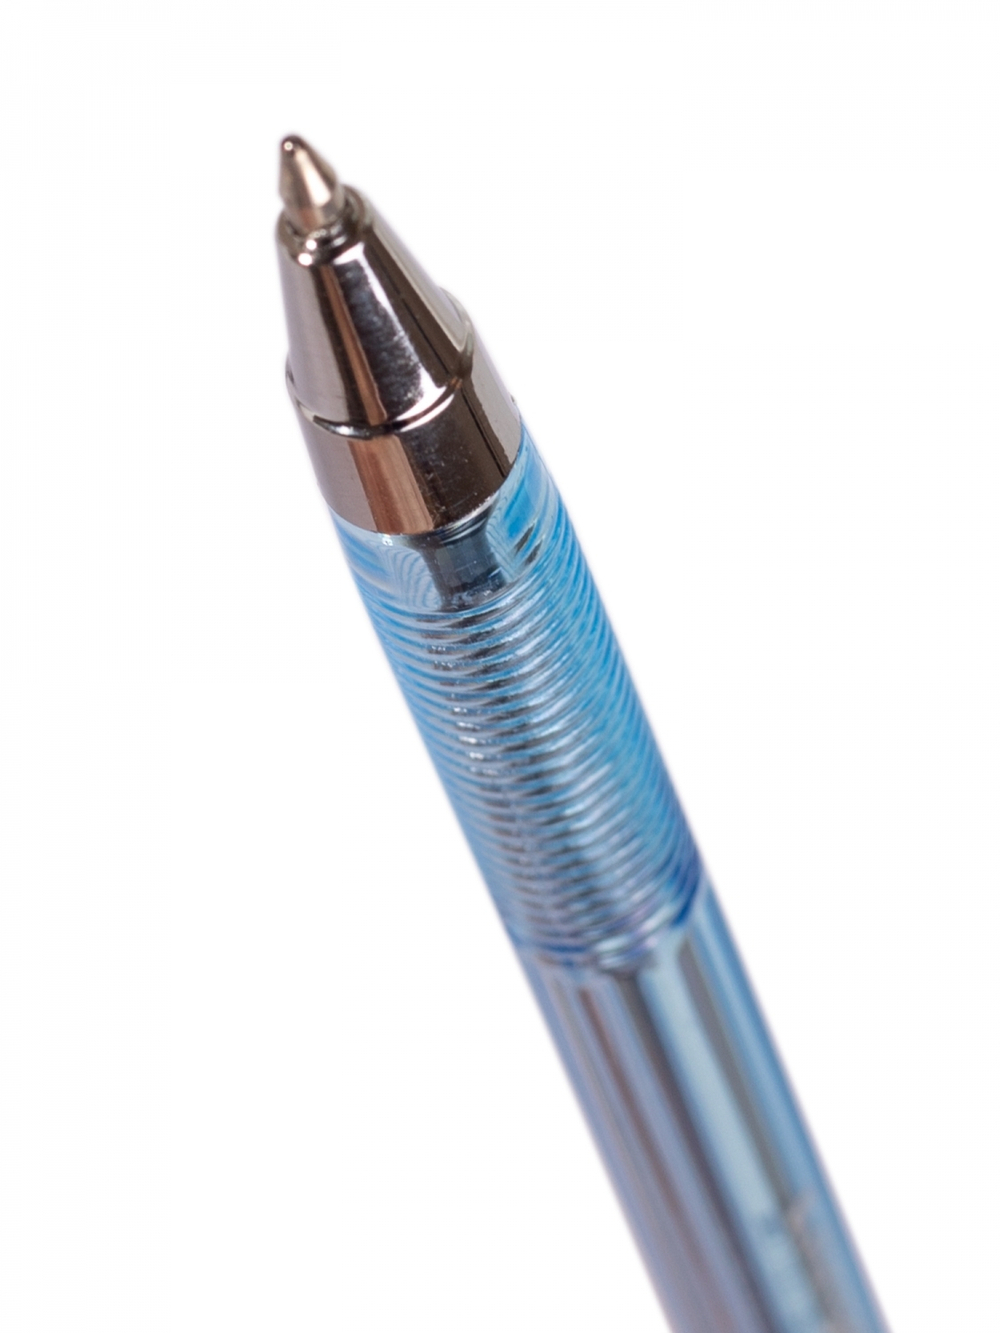 Ручка шариковая Alingar "927", синяя, 0,7мм